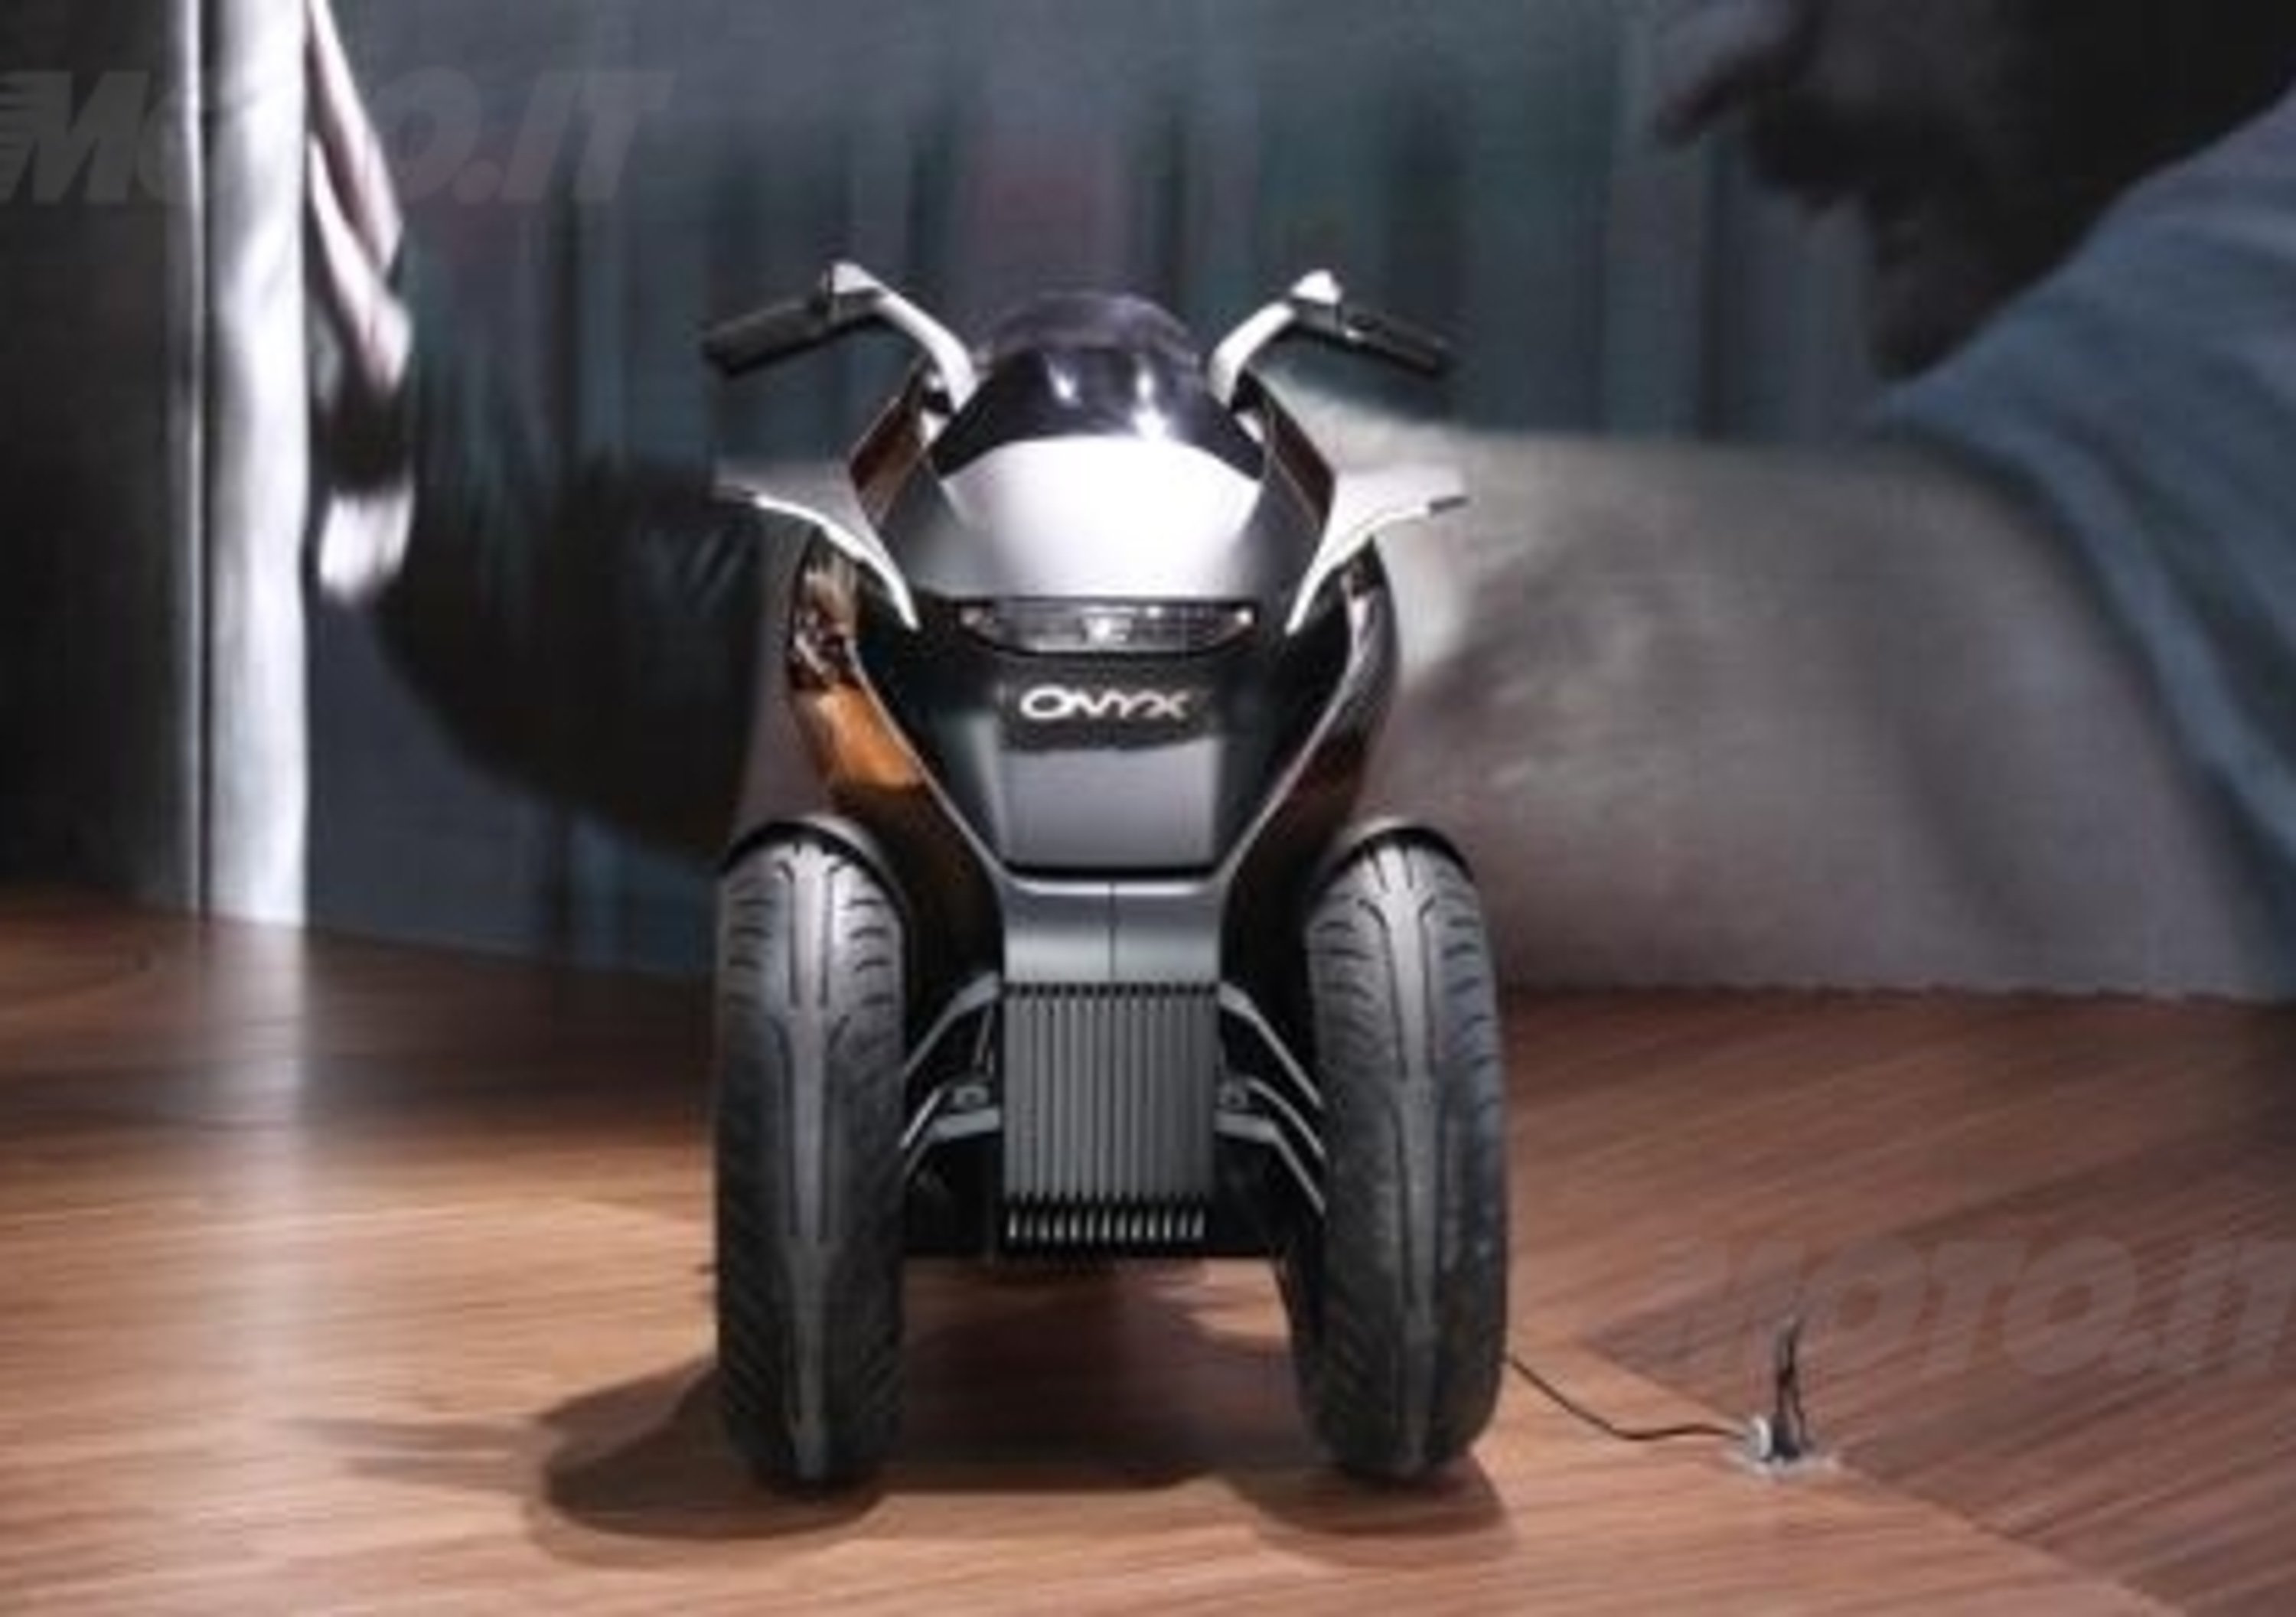 Peugeot supertrike Onyx Concept Scooter al salone di Parigi